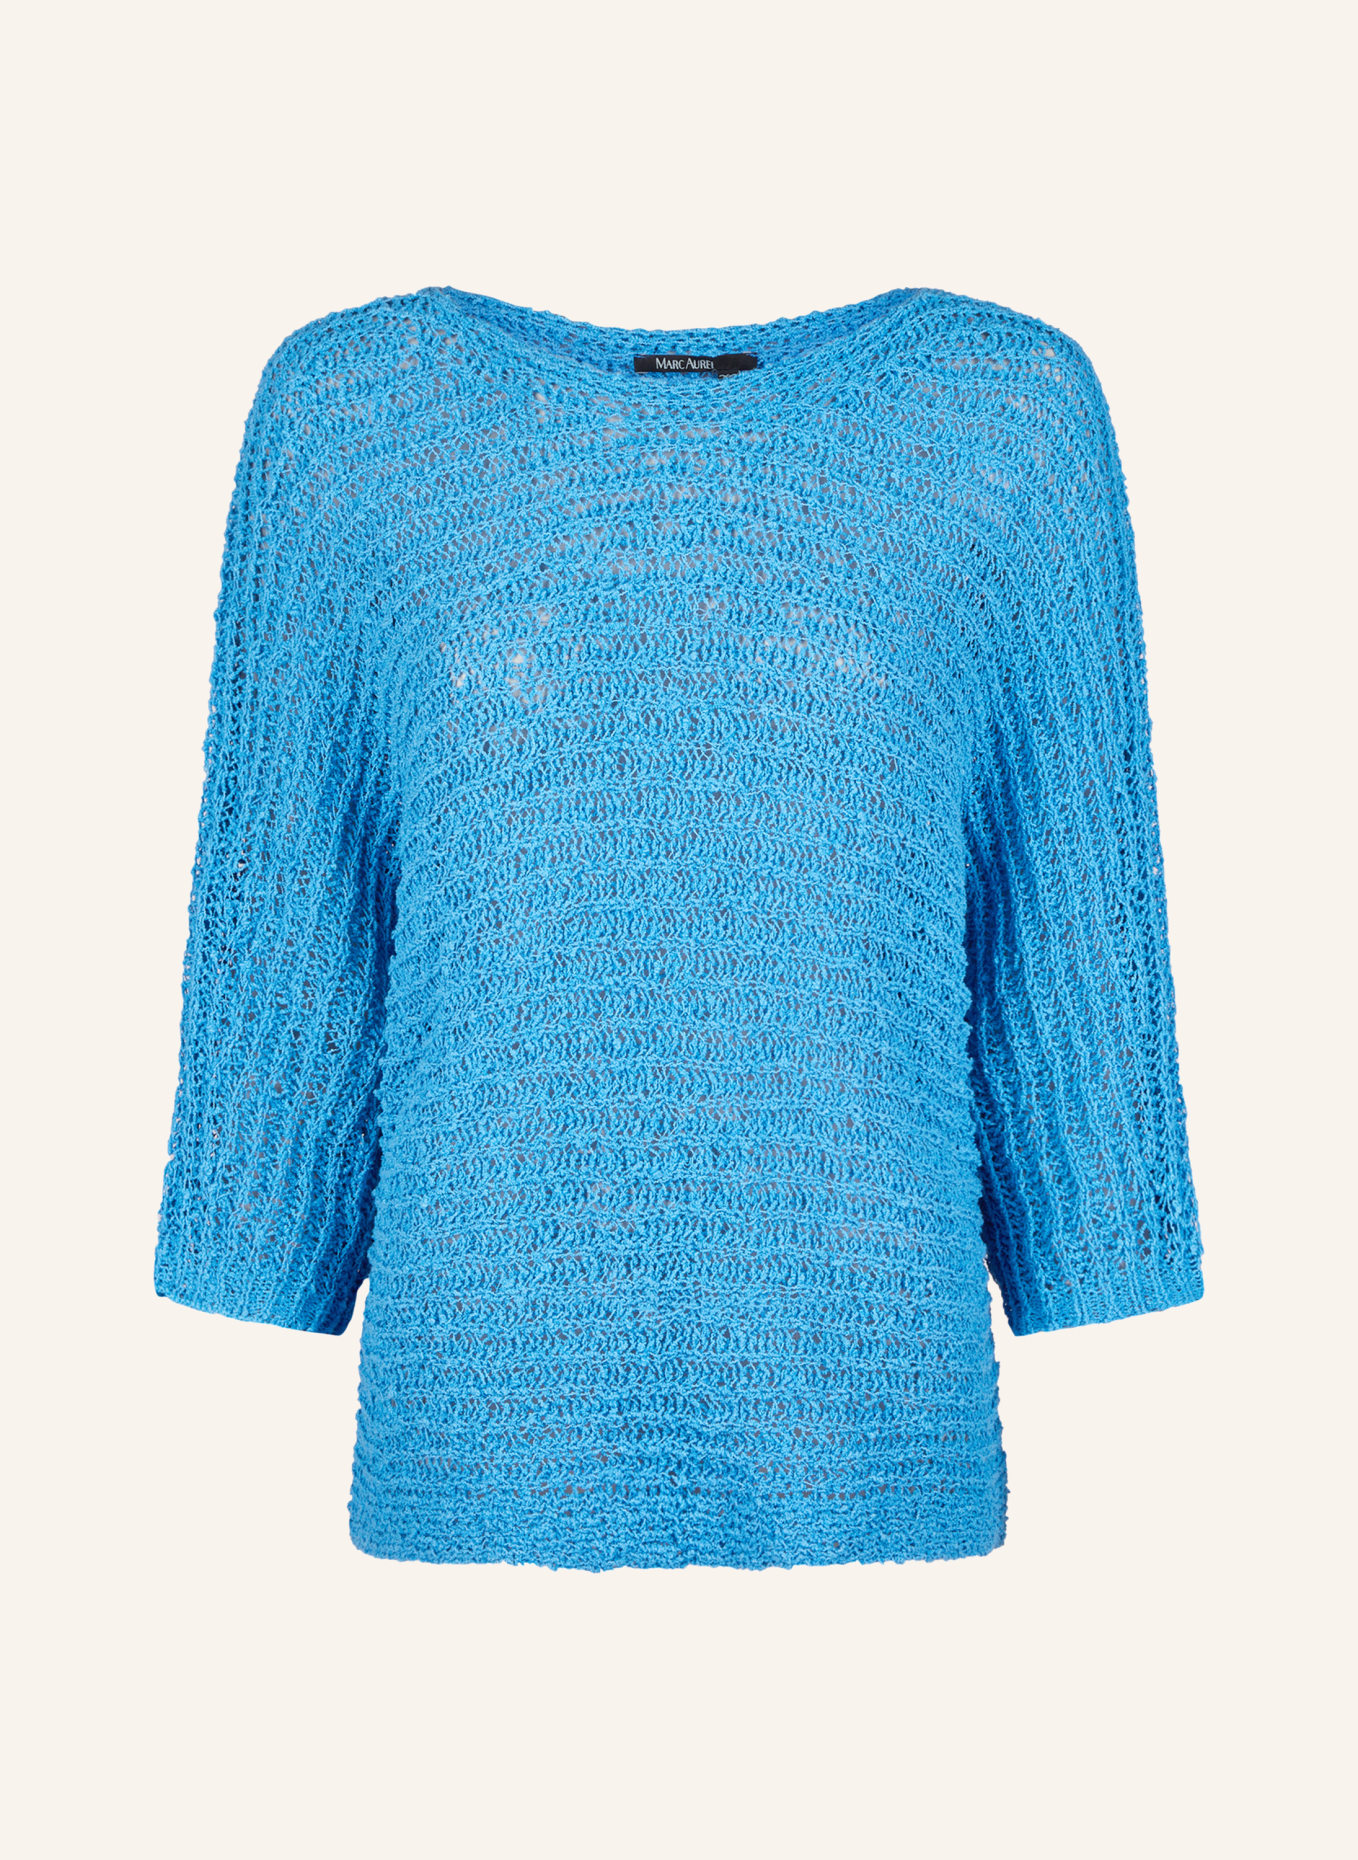 MARC AUREL Pullover, Farbe: BLAU (Bild 1)